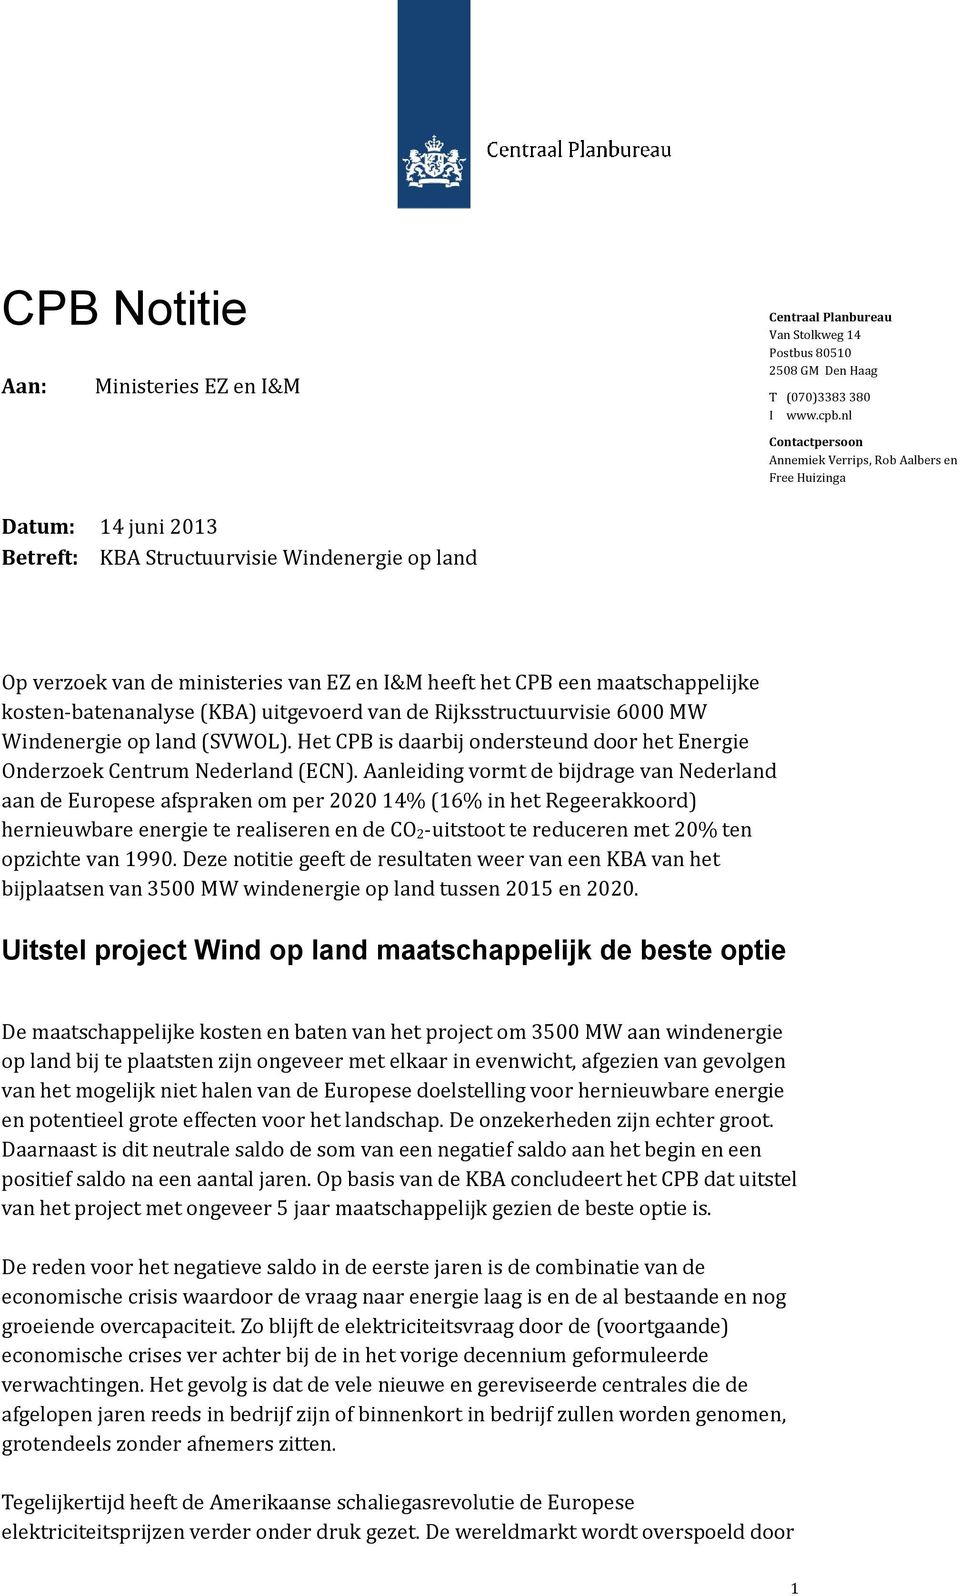 maatschappelijke kosten-batenanalyse (KBA) uitgevoerd van de Rijksstructuurvisie 6000 MW Windenergie op land (SVWOL). Het CPB is daarbij ondersteund door het Energie Onderzoek Centrum Nederland (ECN).